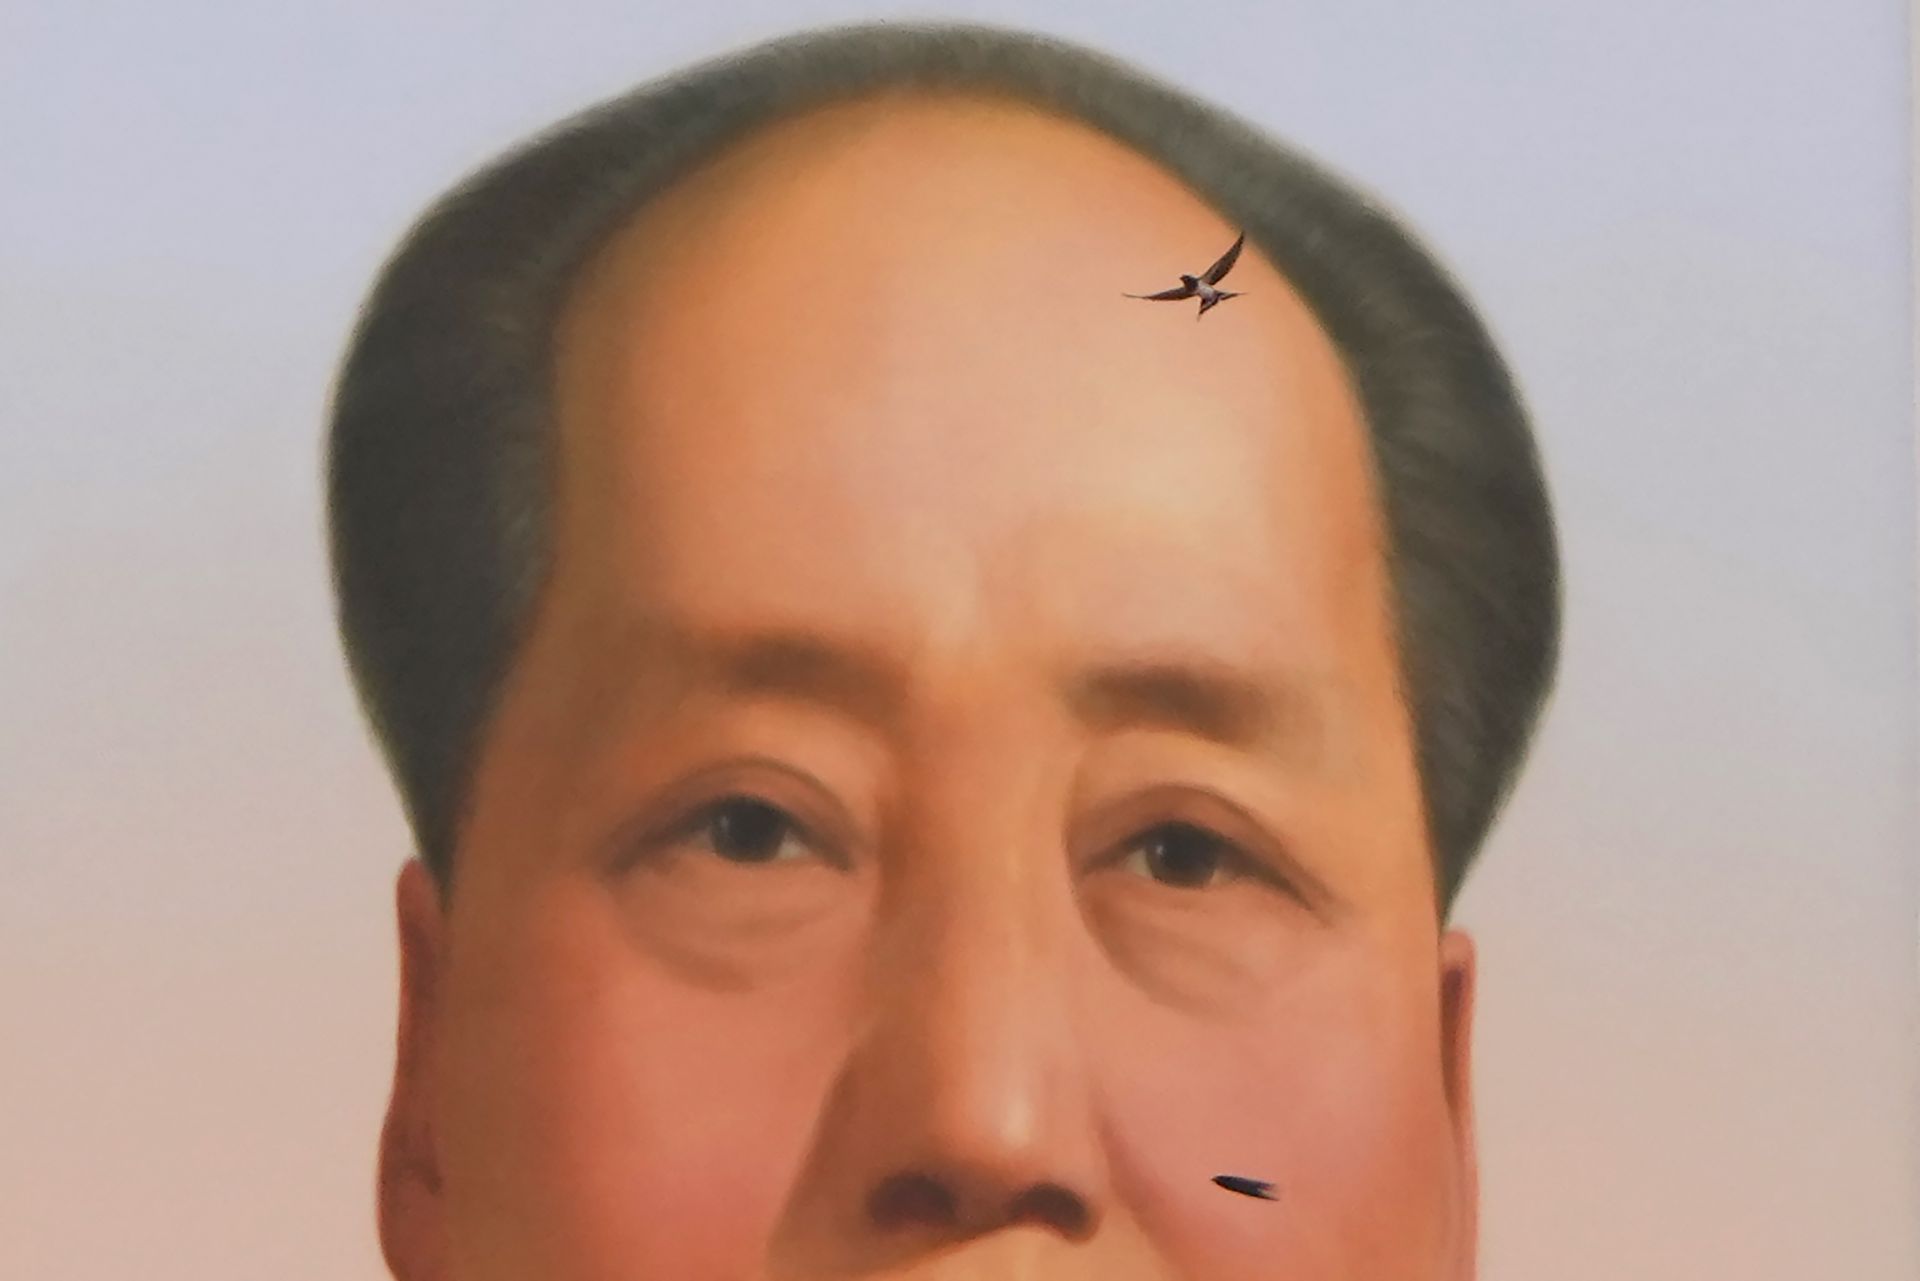  Лястовица лети покрай портрета на починалия китайски водач Мао Дзедун по време на гала във връзка 100-годишнината от основаването на ръководещата китайска комунистическа партия на портата Тянанмън в Пекин 